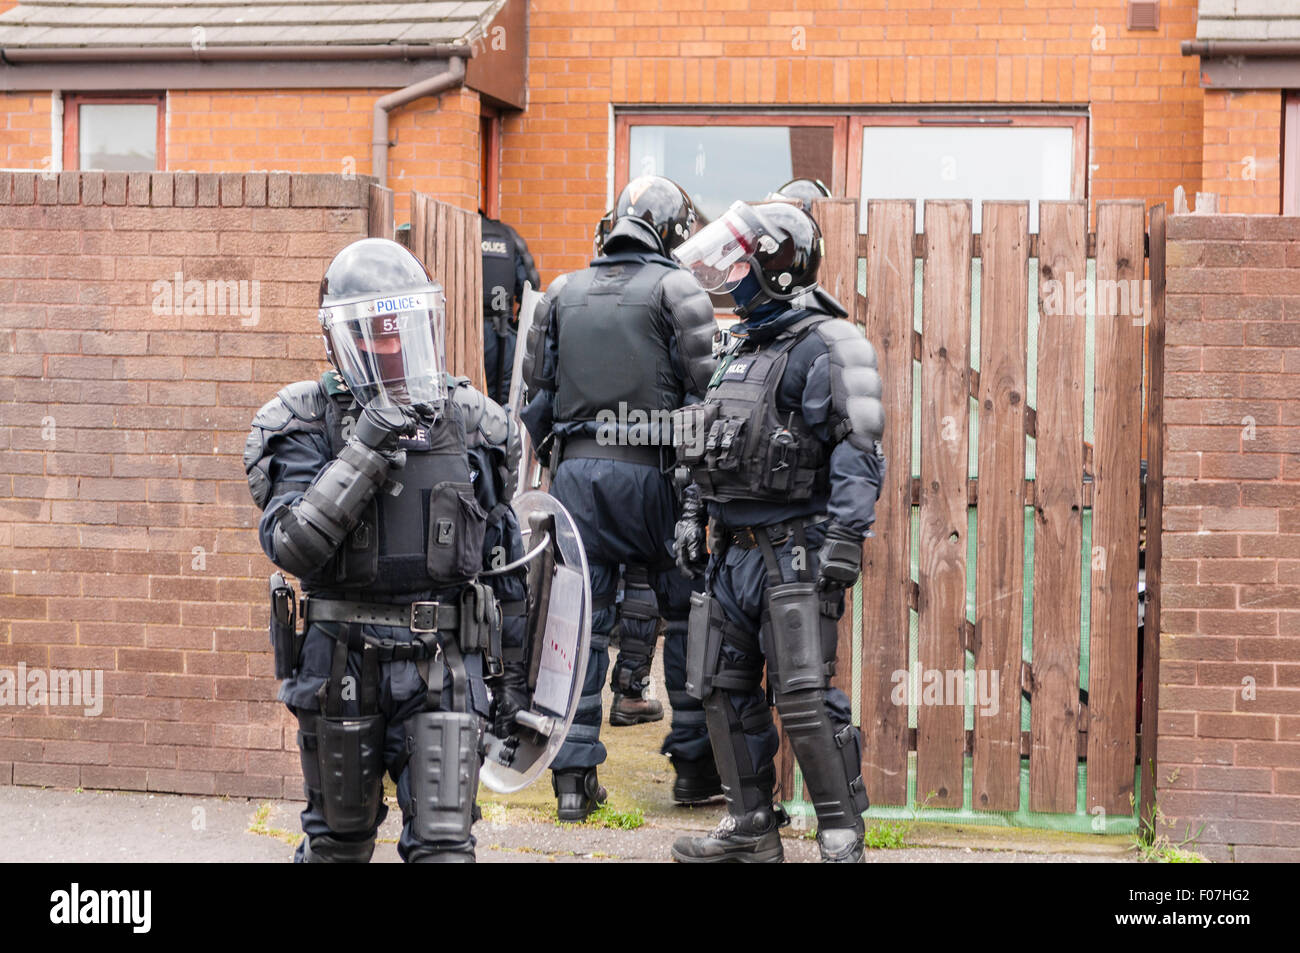 Belfast, Irlande du Nord. 09 août 2015 - Riot Squad PSNI recherche agents une maison dans laquelle des cocktails Molotov ont été réalisés. Crédit : Stephen Barnes/Alamy Live News Banque D'Images